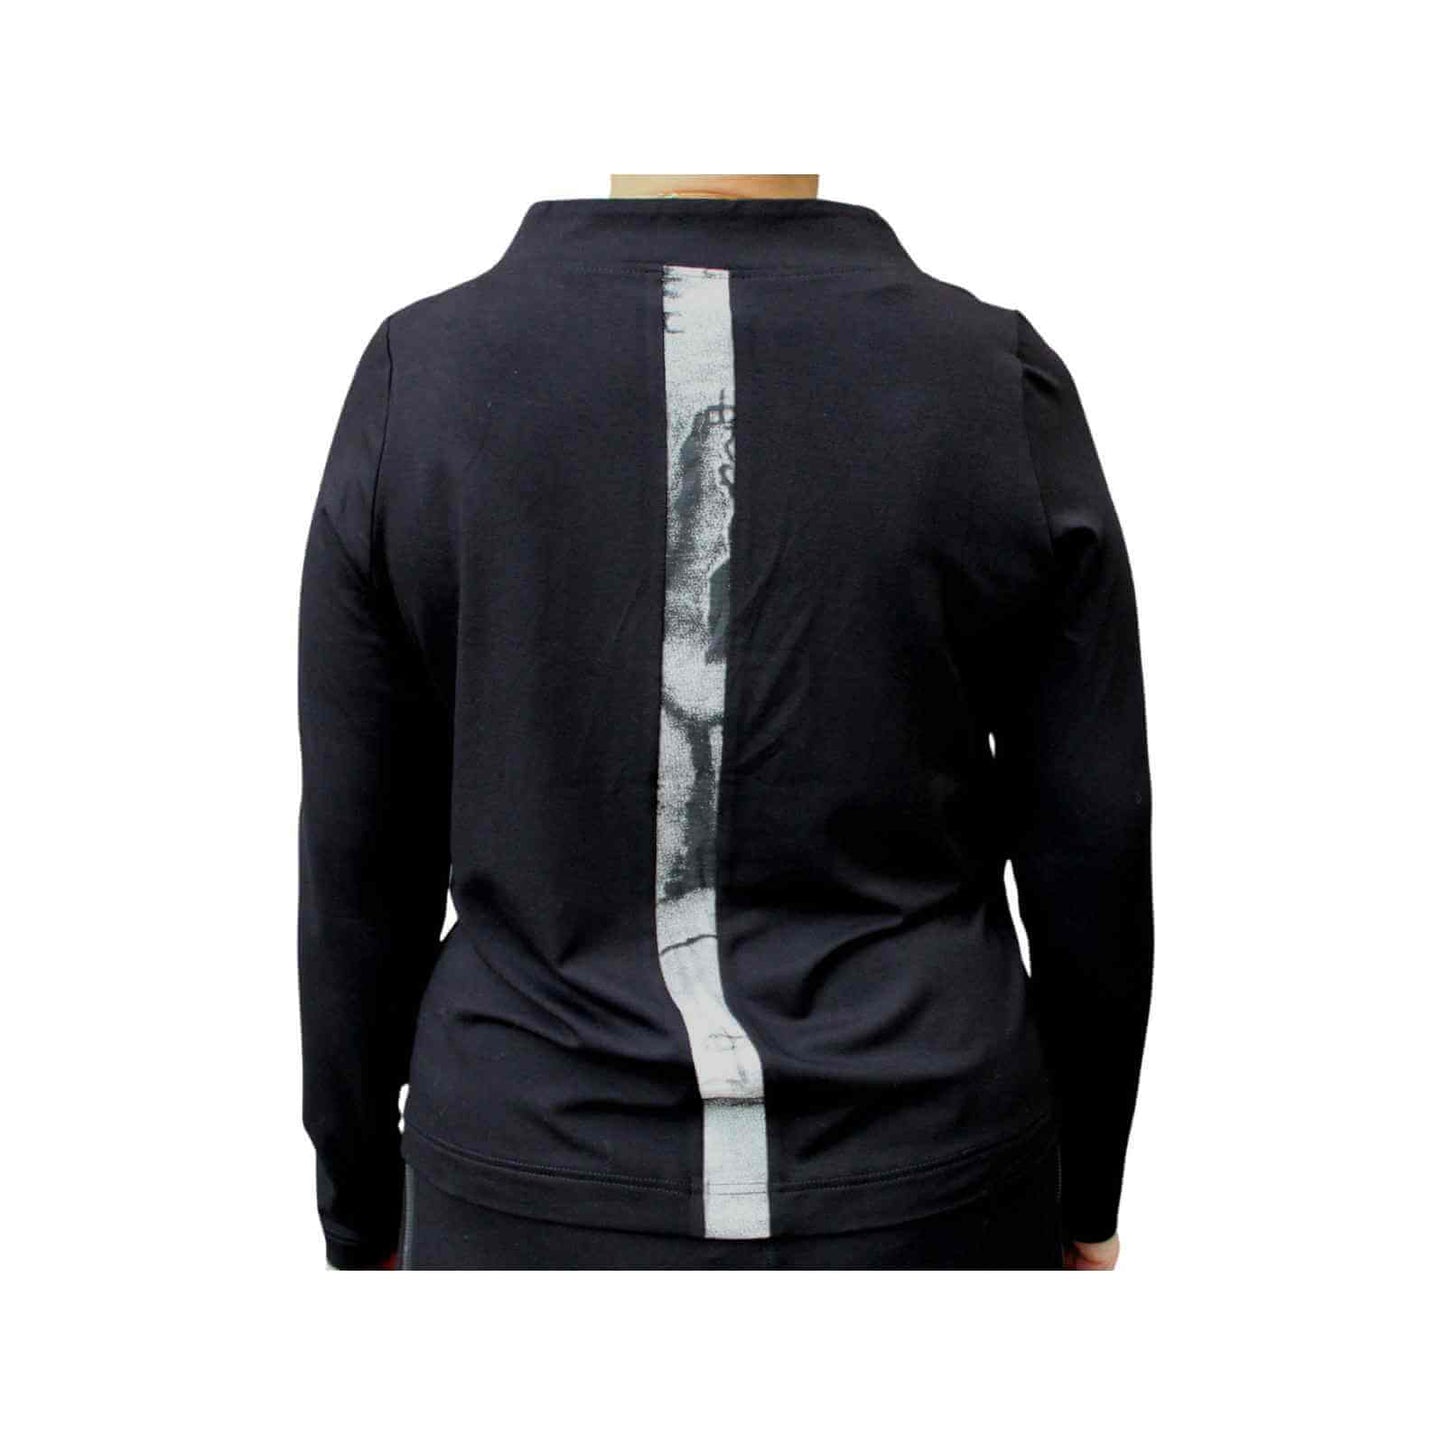 Sort bluse med grå stribe på langs fra E-Avantgarde bagfra